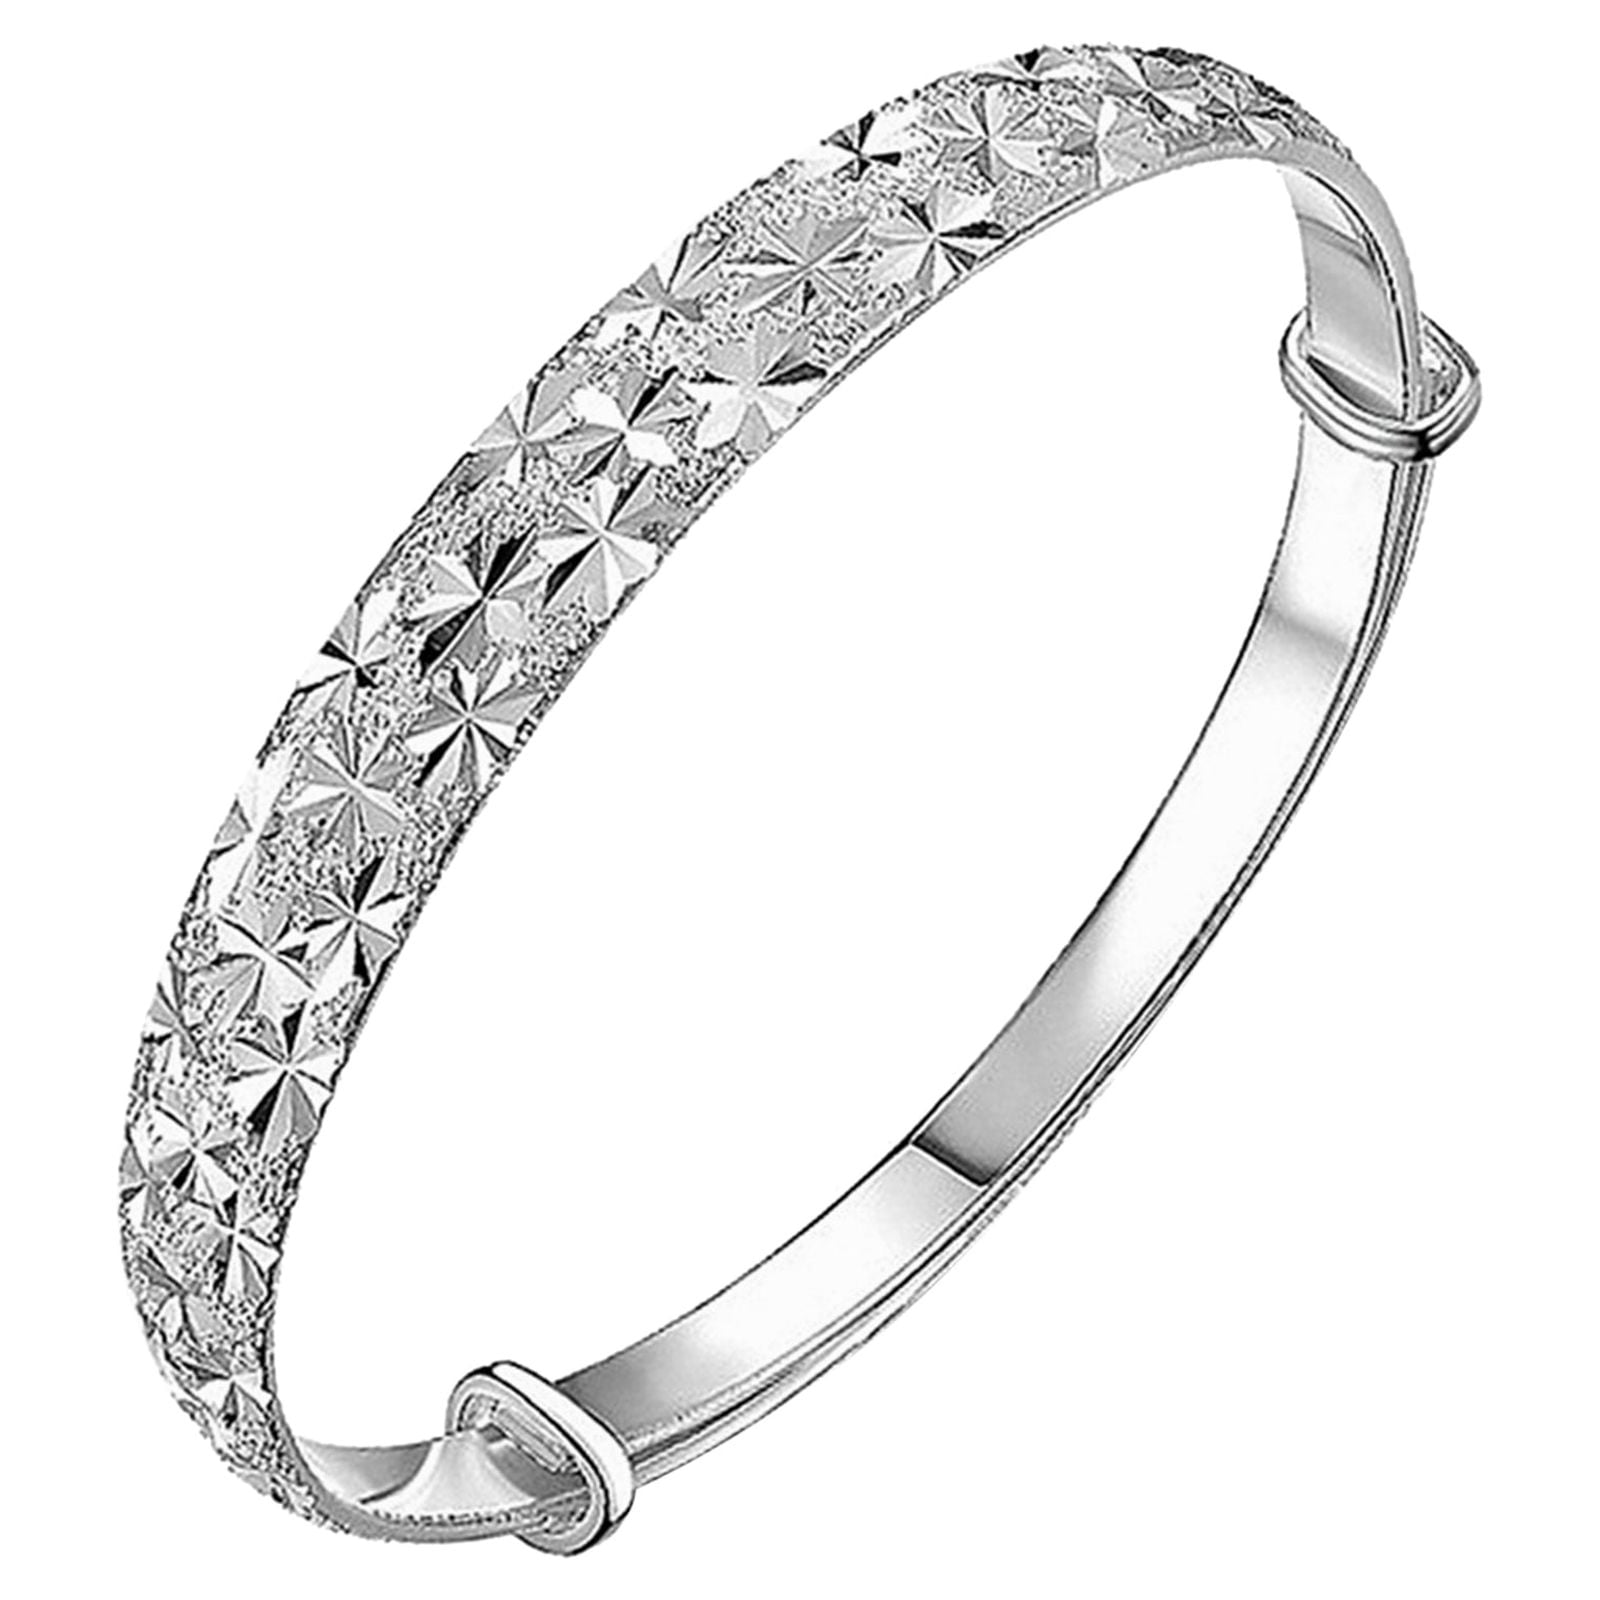 Bracelet | Jewelry - Natural Pearl 925 Sterling Silver Bracelet Fashion  Jewelry Women - Aliexpress